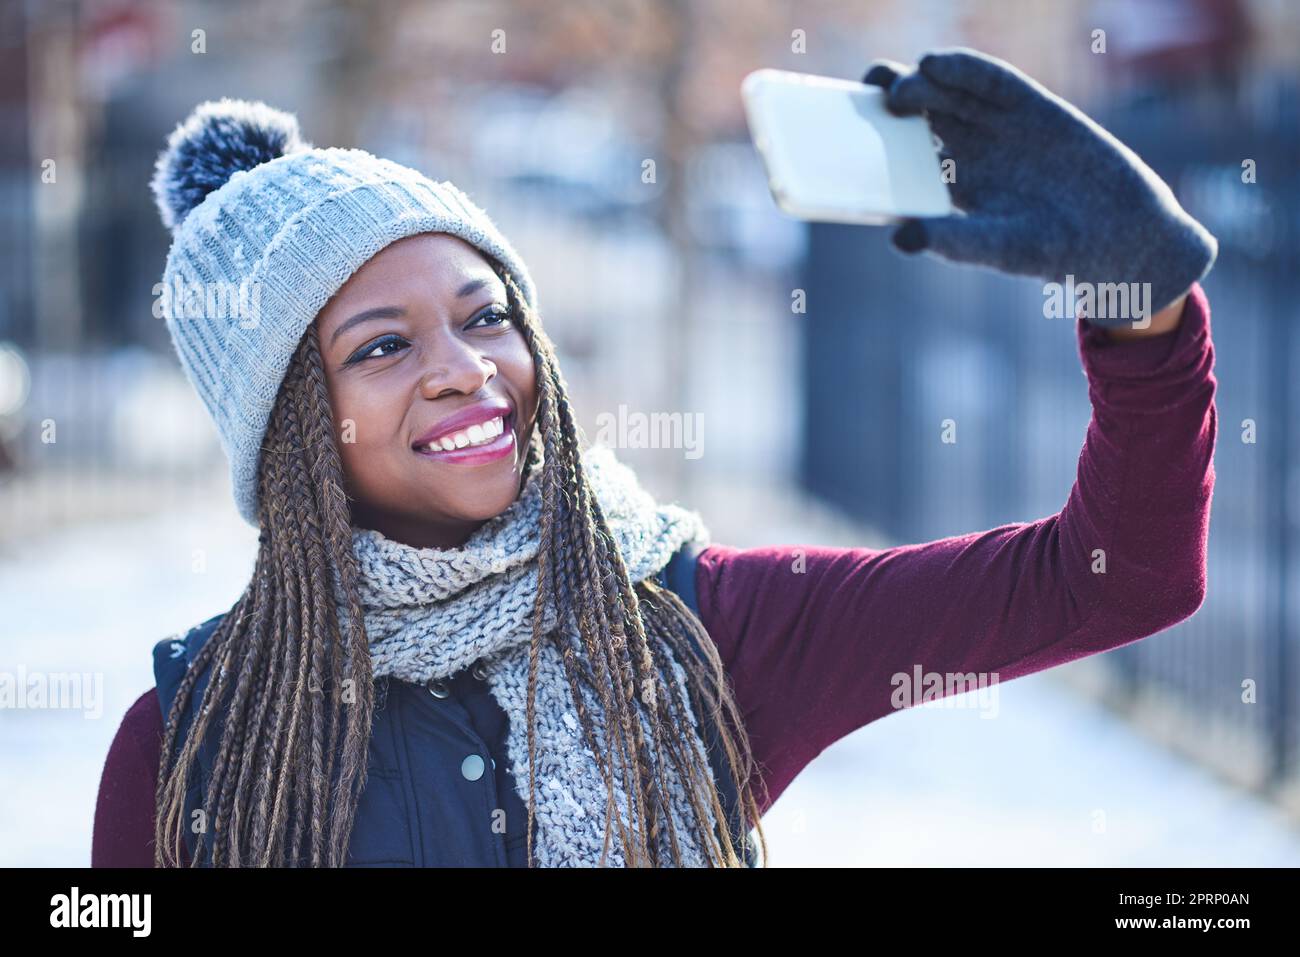 Ecco la neve e i selfie. una bella giovane donna che prende un selfie in una giornata innevata all'aperto Foto Stock